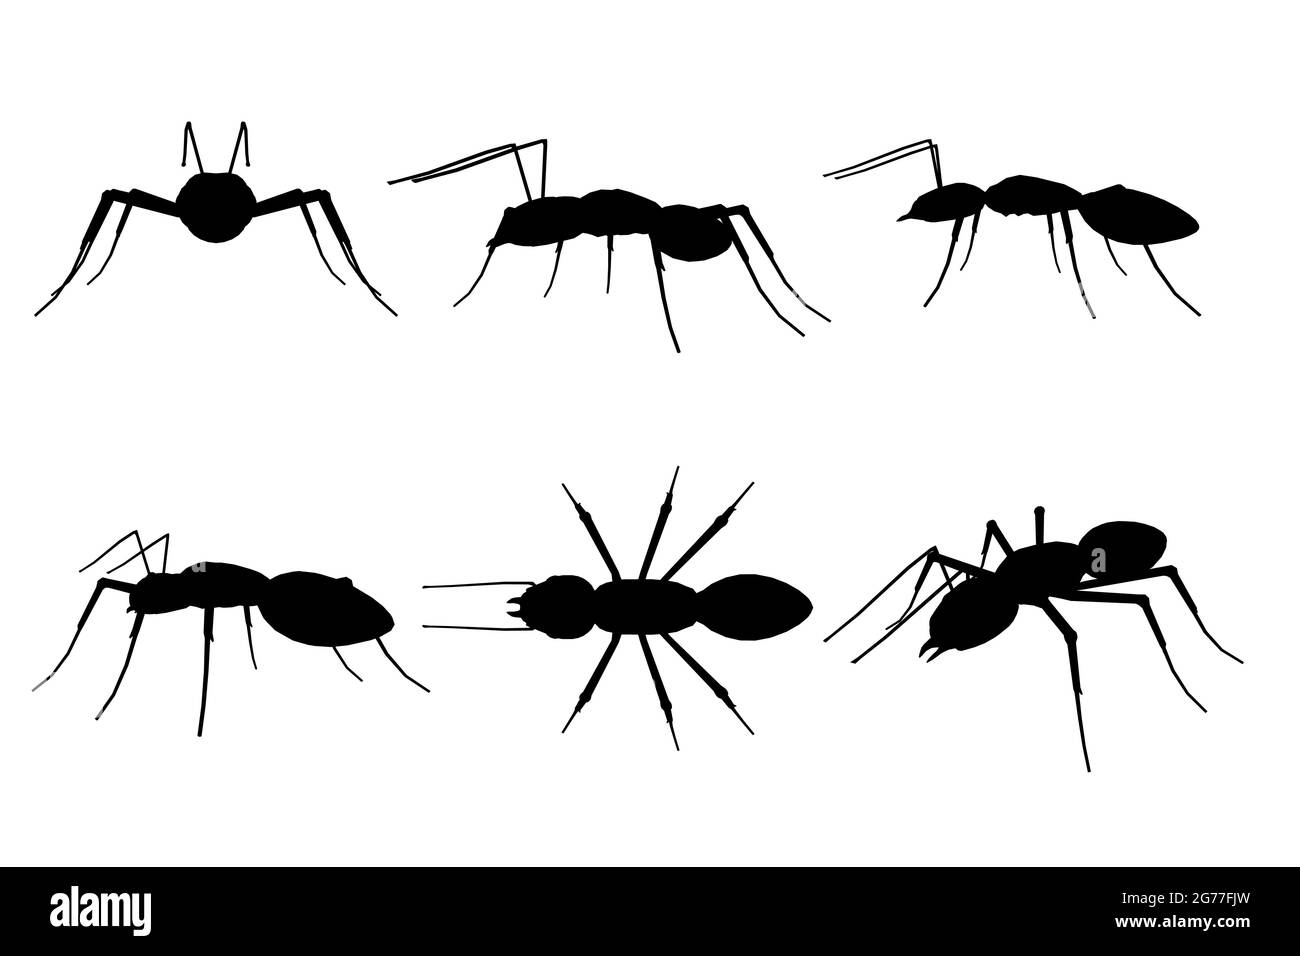 Ensemble avec silhouettes d'ant dans différentes positions isolées sur fond blanc. Illustration vectorielle. Illustration de Vecteur